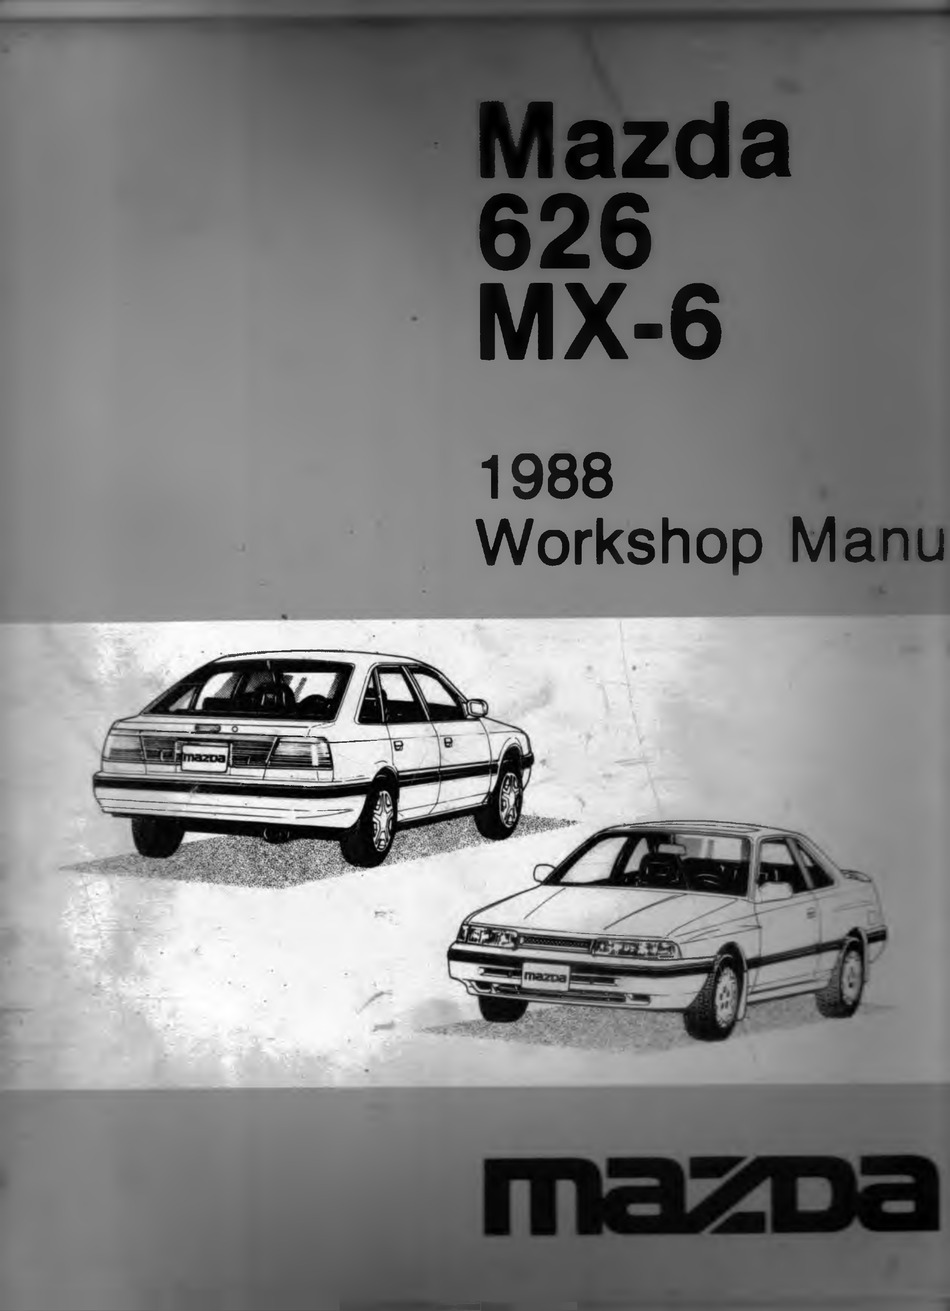 MAZDA 626 1,6l 2,0l Benziner Vergaser ab 9/1982 Motor Reparaturanleitung B1021 